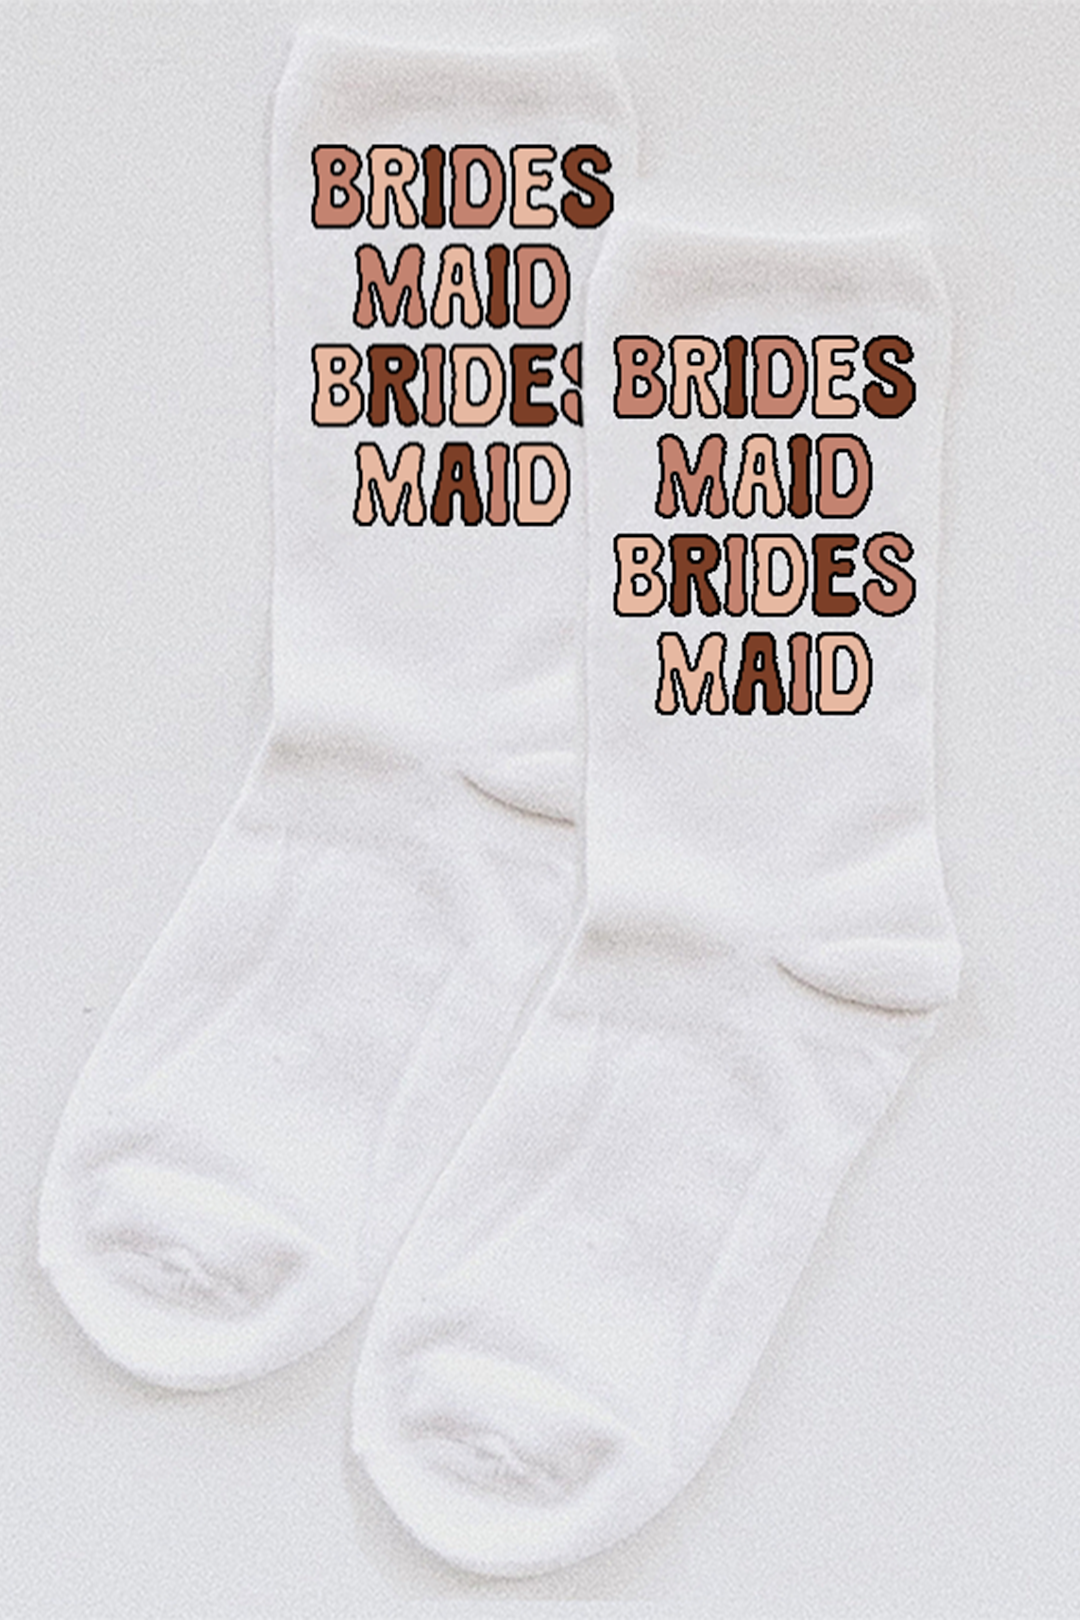 Bridesmaid Bubble Letter socks - choose your colors!